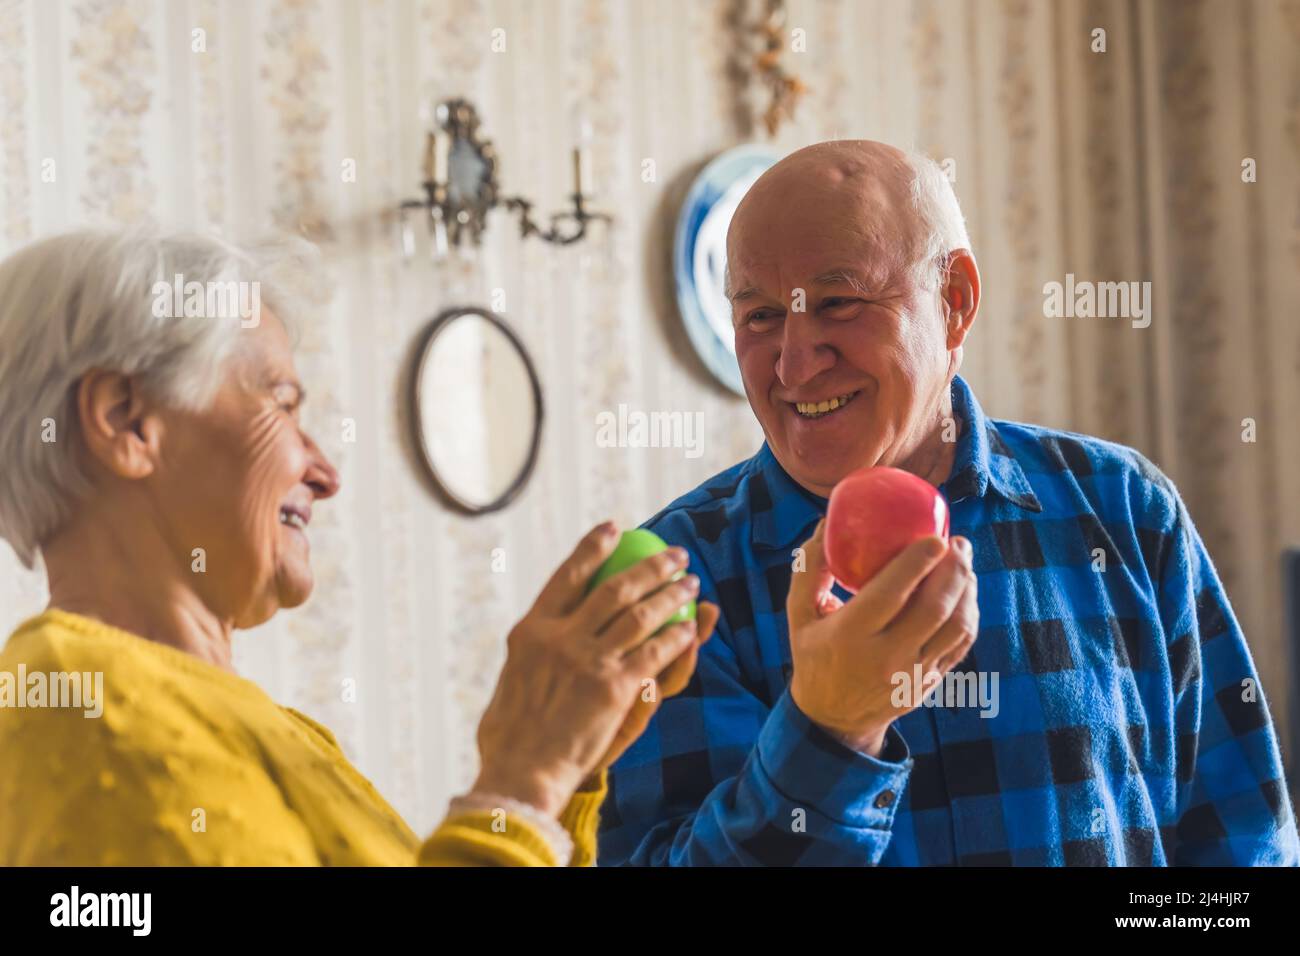 Adorabile sorridente coppia caucasica senior in un appartamento vecchio stile che si guarda l'un l'altro e sorridendo mentre tiene mele fresche. Foto di alta qualità Foto Stock